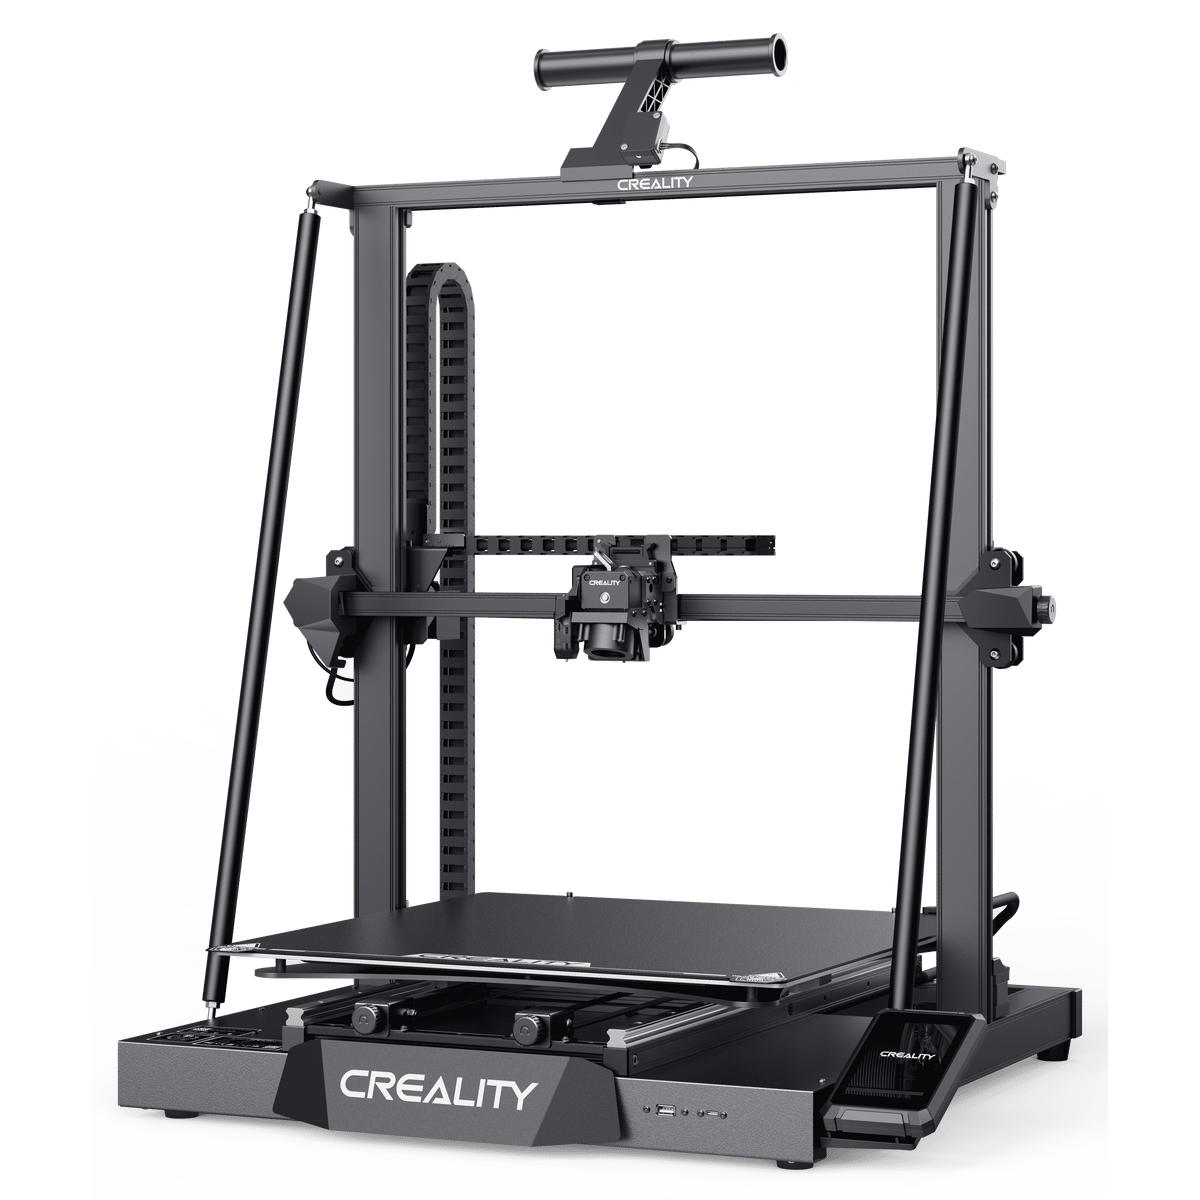 Køb Creality CR-M4 3d printer - Pris 9899.00 kr.